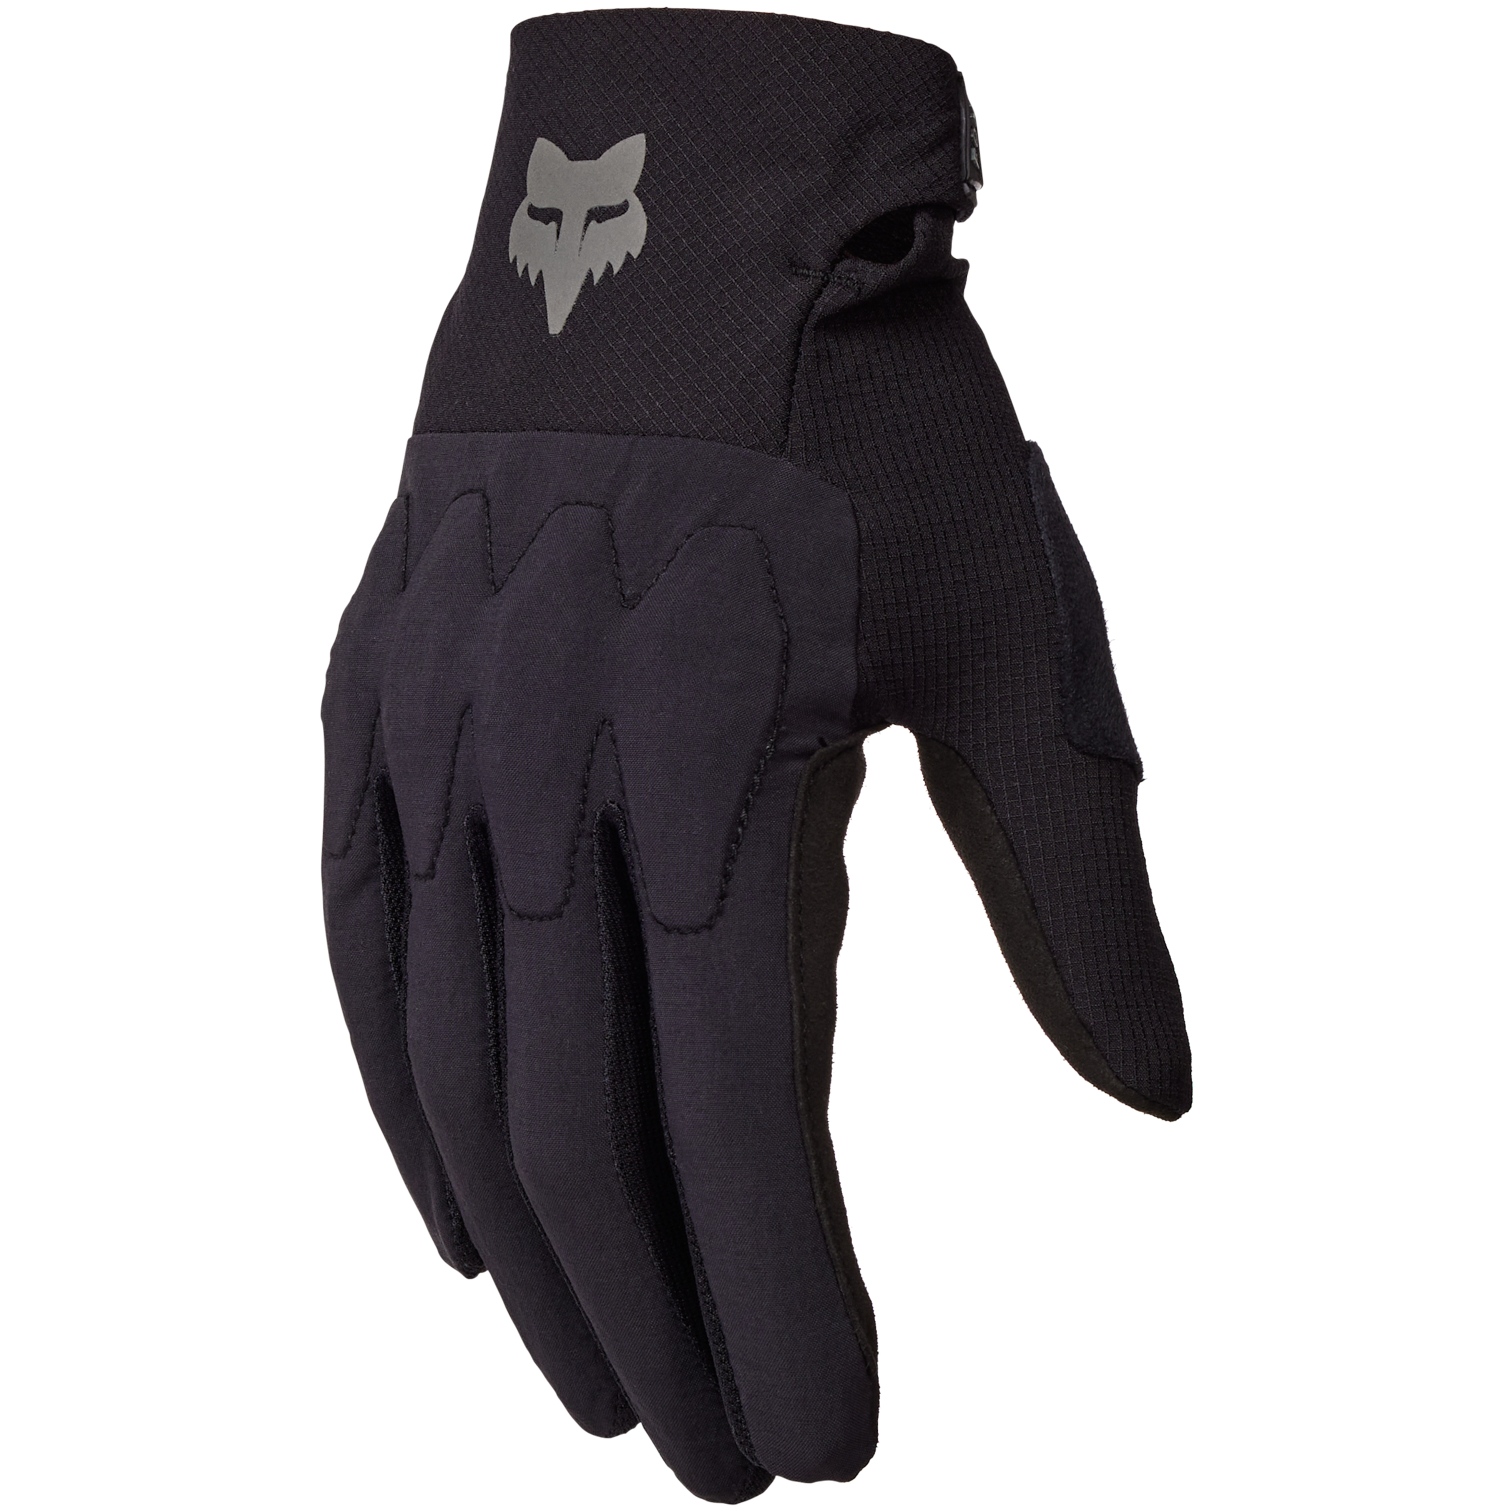 Productfoto van FOX Defend D3O Fietshandschoenen - zwart